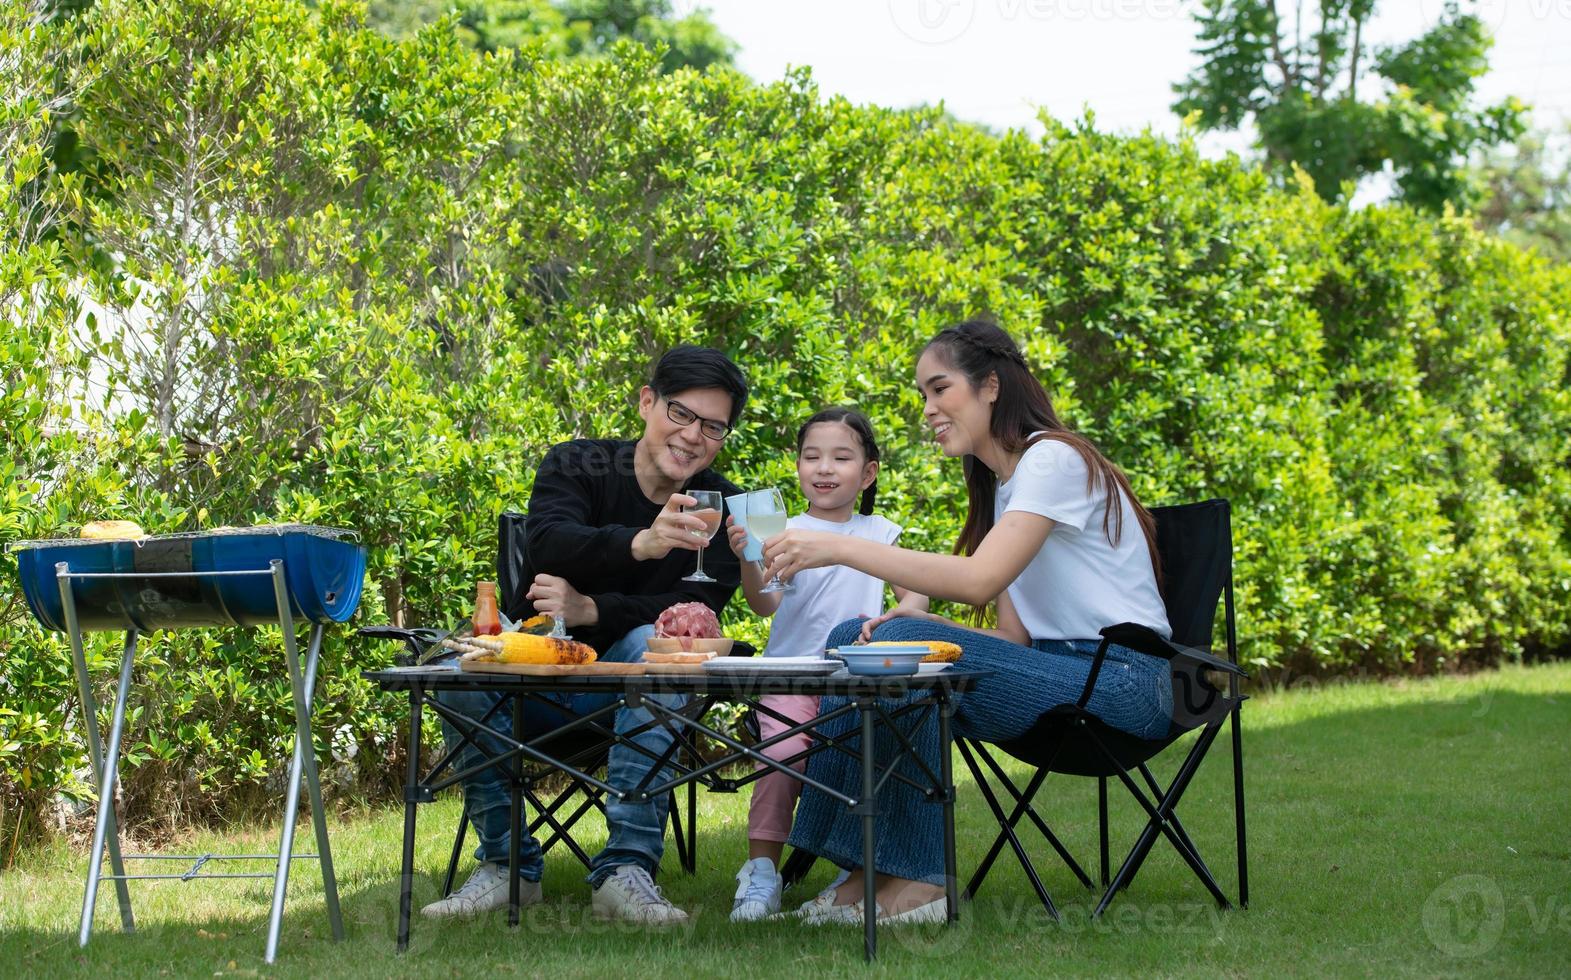 le attività per le vacanze in famiglia includono padre, madre e figli con barbecue da campeggio e giocare in cortile insieme felicemente in vacanza. foto